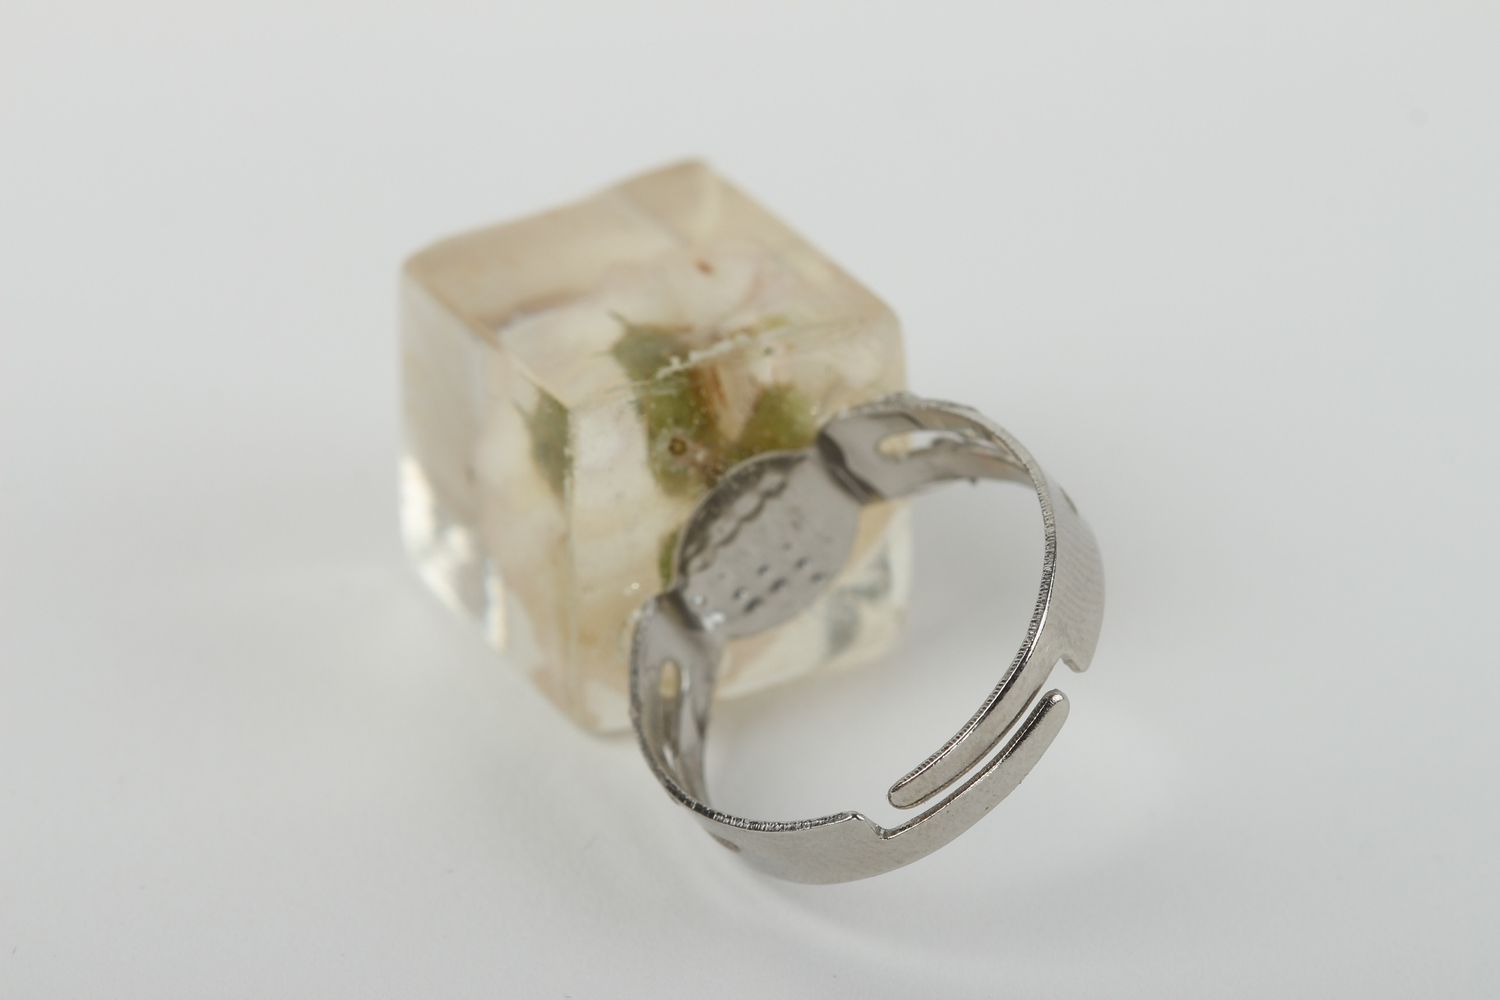 Кольцо ручной работы кольцо из эпоксидной смолы модное кольцо с цветком фото 3